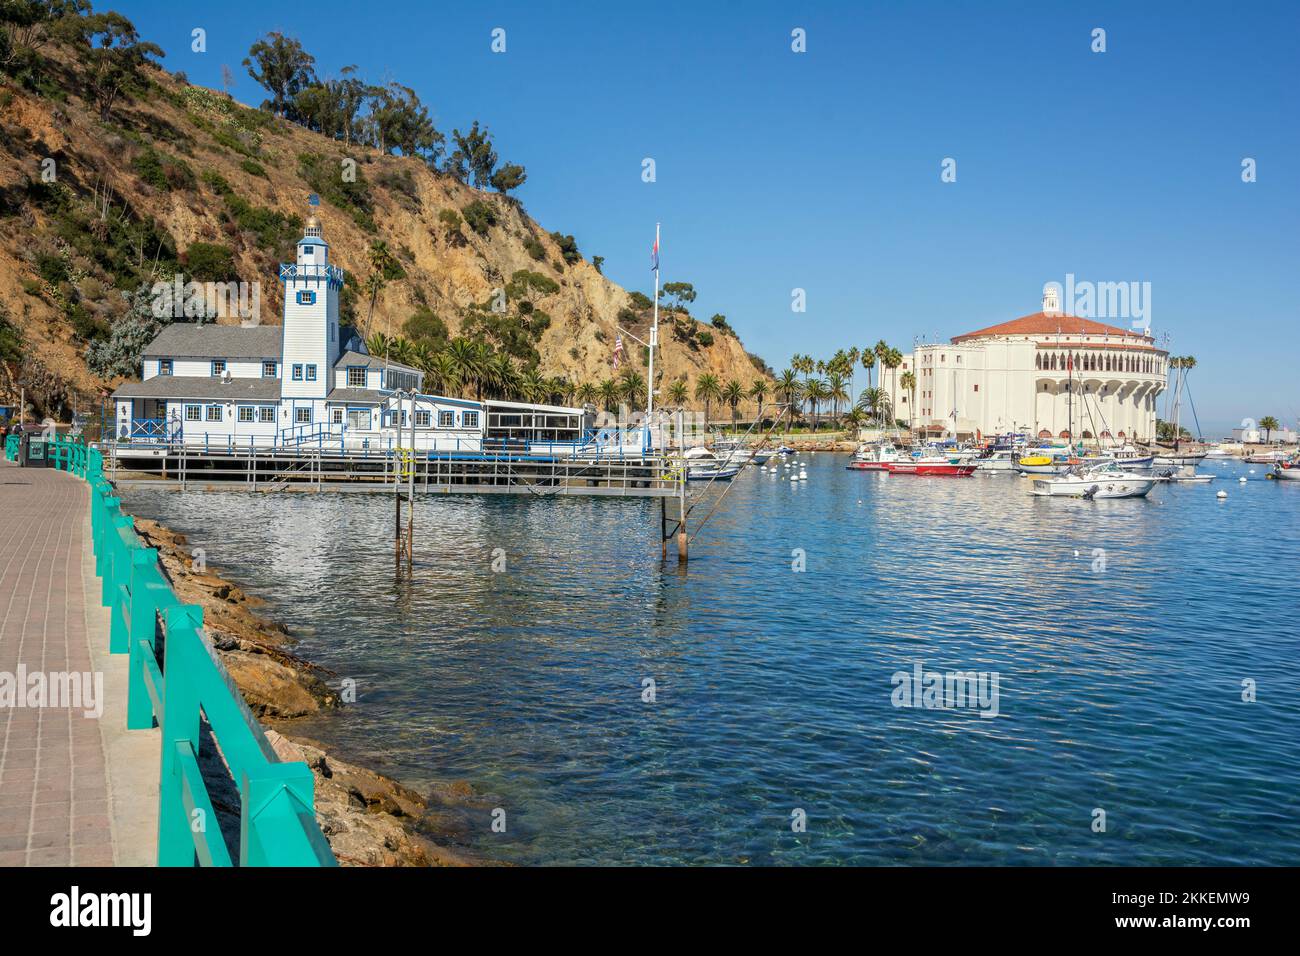 Californie, Catalina Island, via Casino, Avalon Harbour, Catalina Island Yacht Club fondée en 1924, Casino Banque D'Images